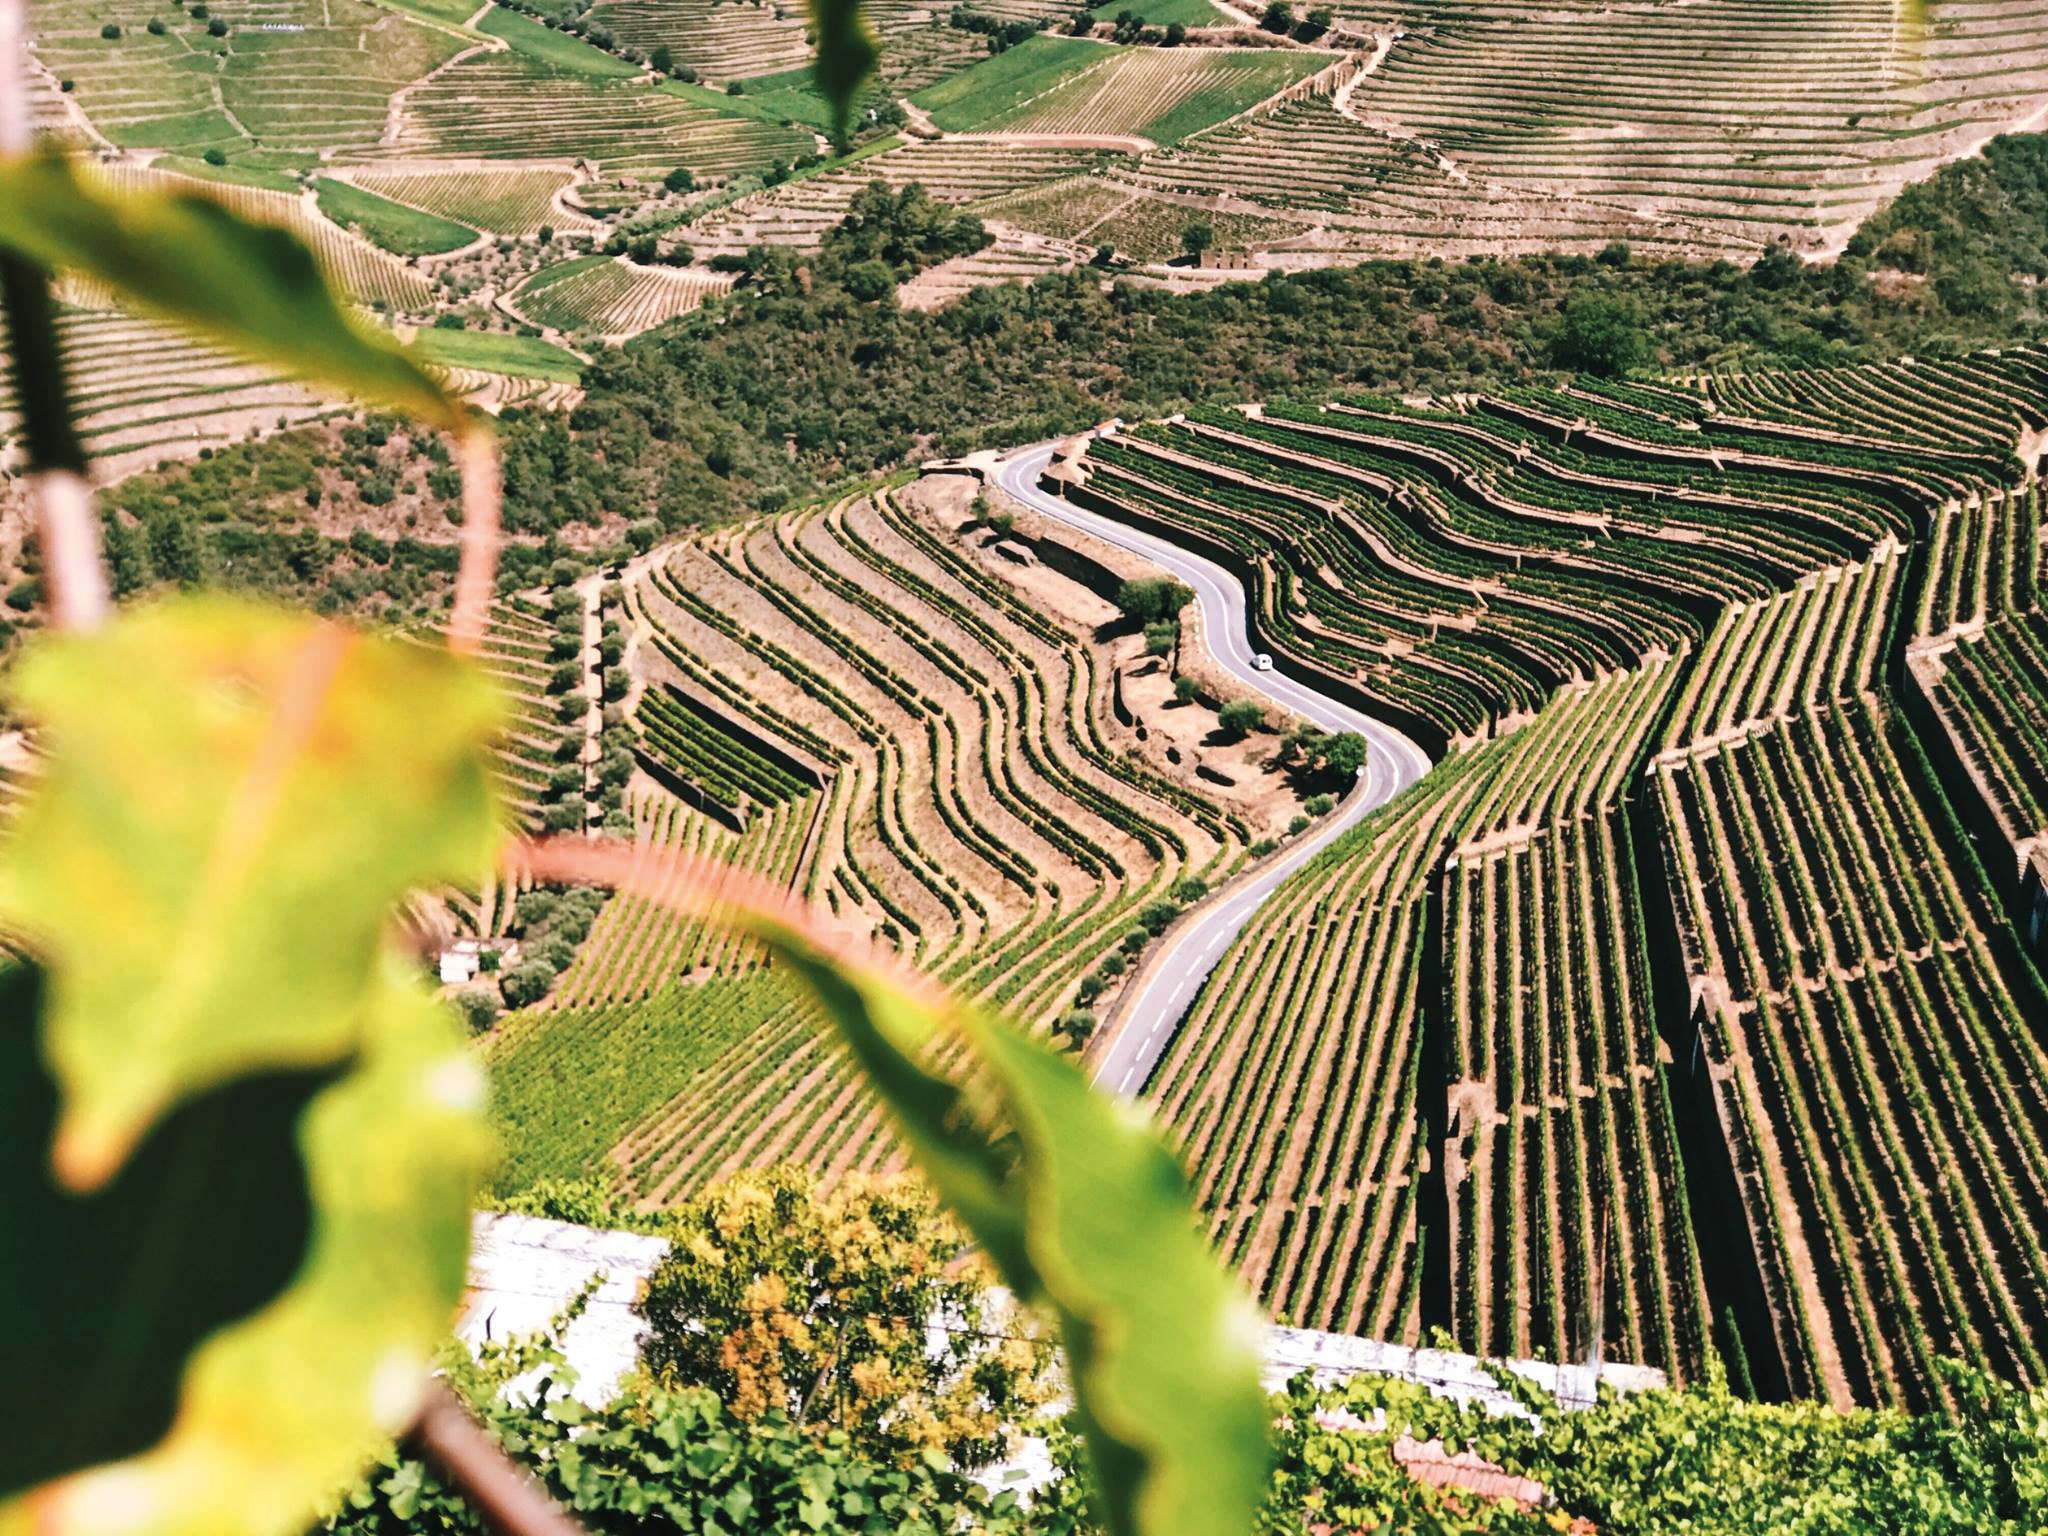 Se vores vine og hedvine fra Portugal